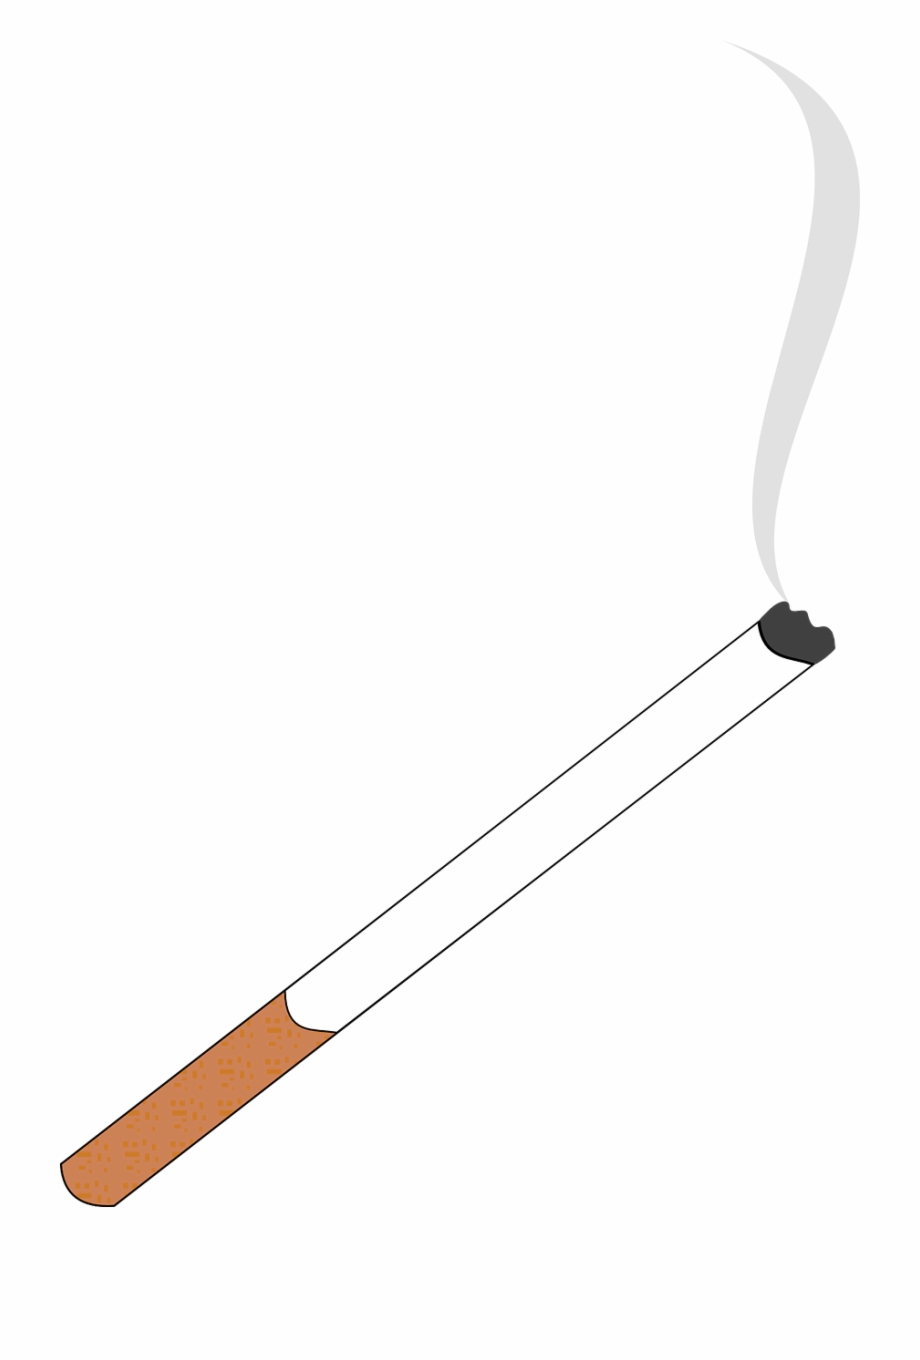 Cigarette smoking smoke.